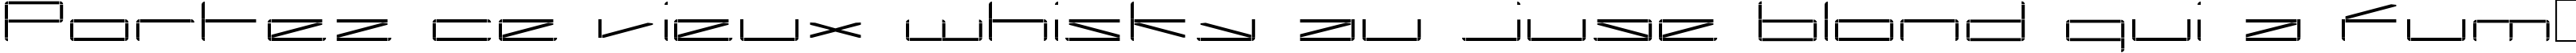 Пример написания шрифтом Capacitor regular текста на французском